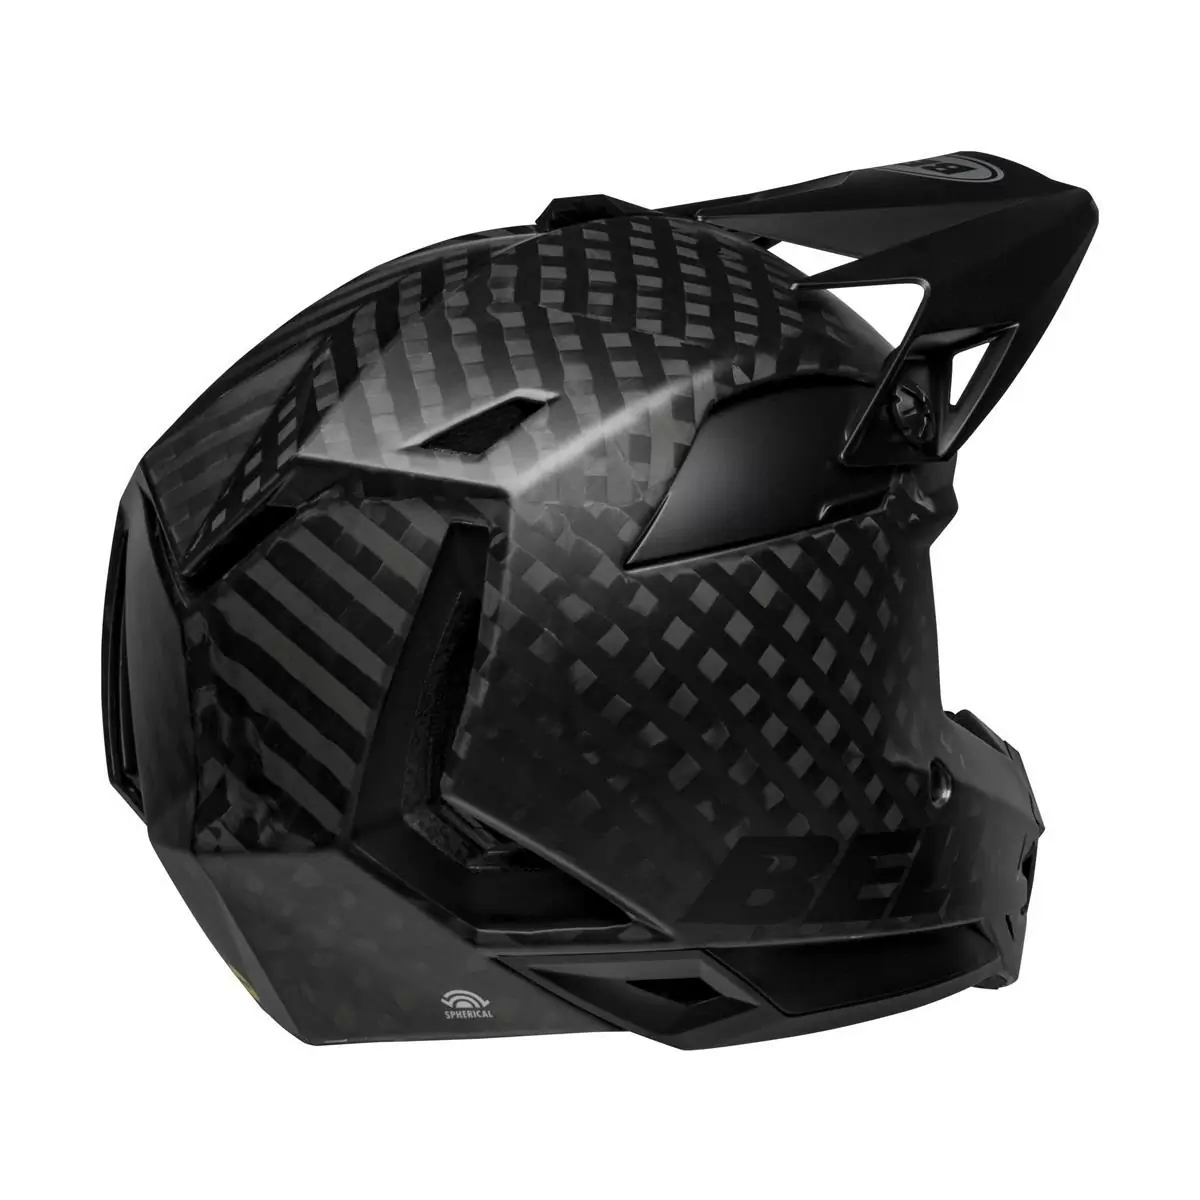 Full-10 Spherical Matte Black Carbon Full Face Helmet Size XS/S (51-55cm) #4